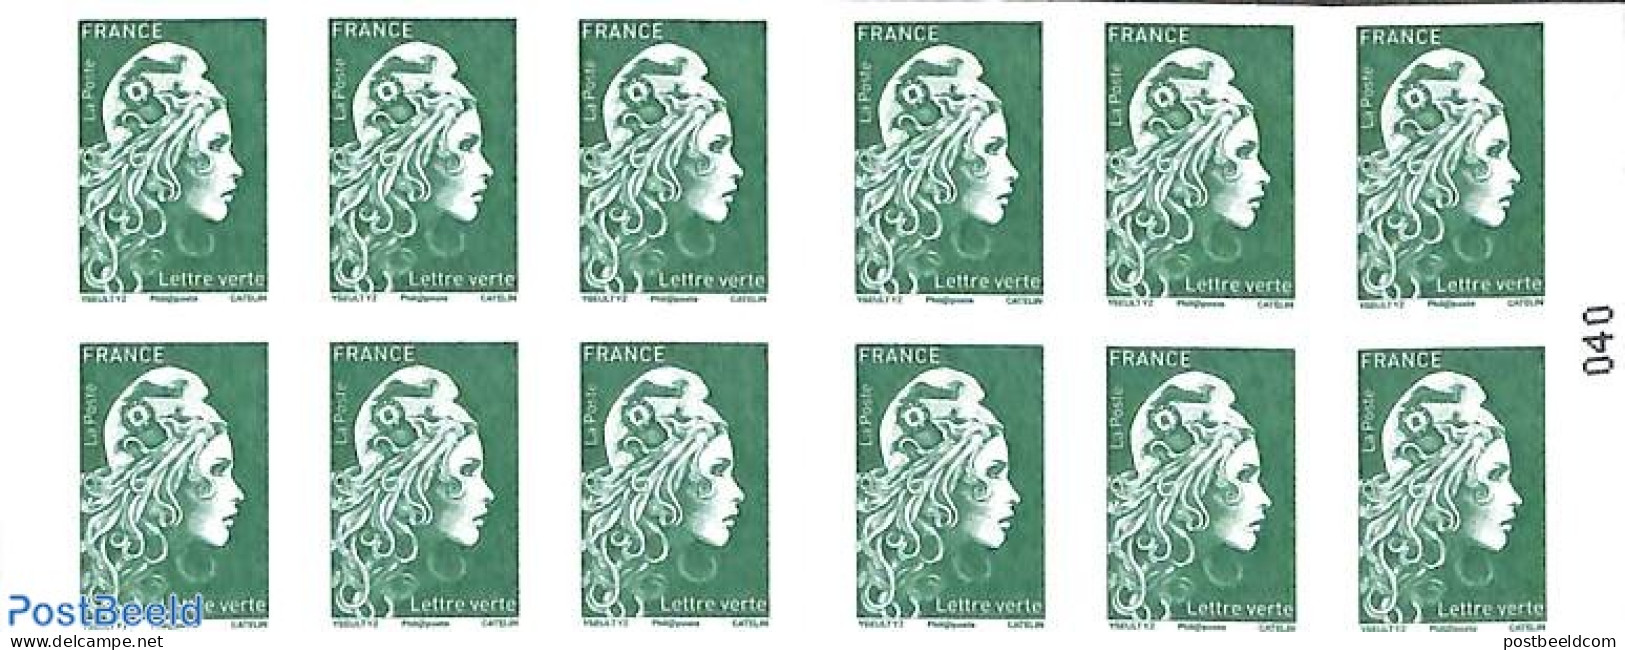 France 2018 Definitives Booklet, Mint NH, Stamp Booklets - Nuovi